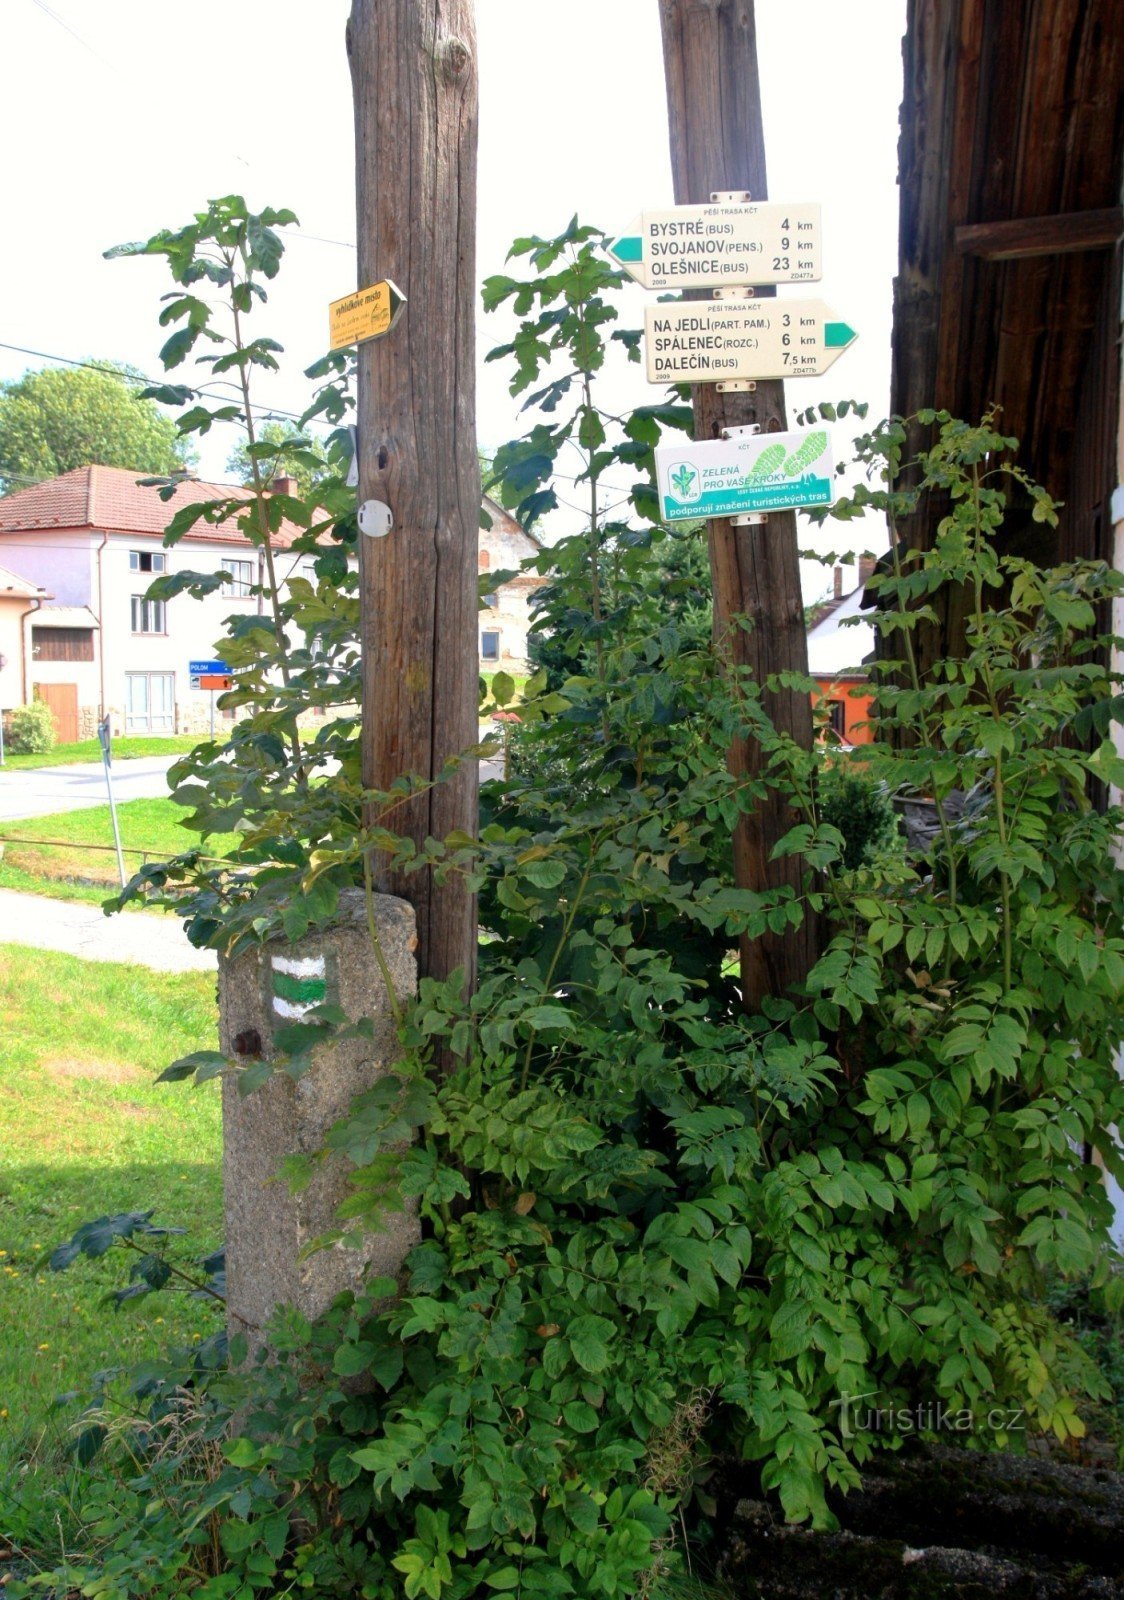 旅游十字路口 Sulkovec